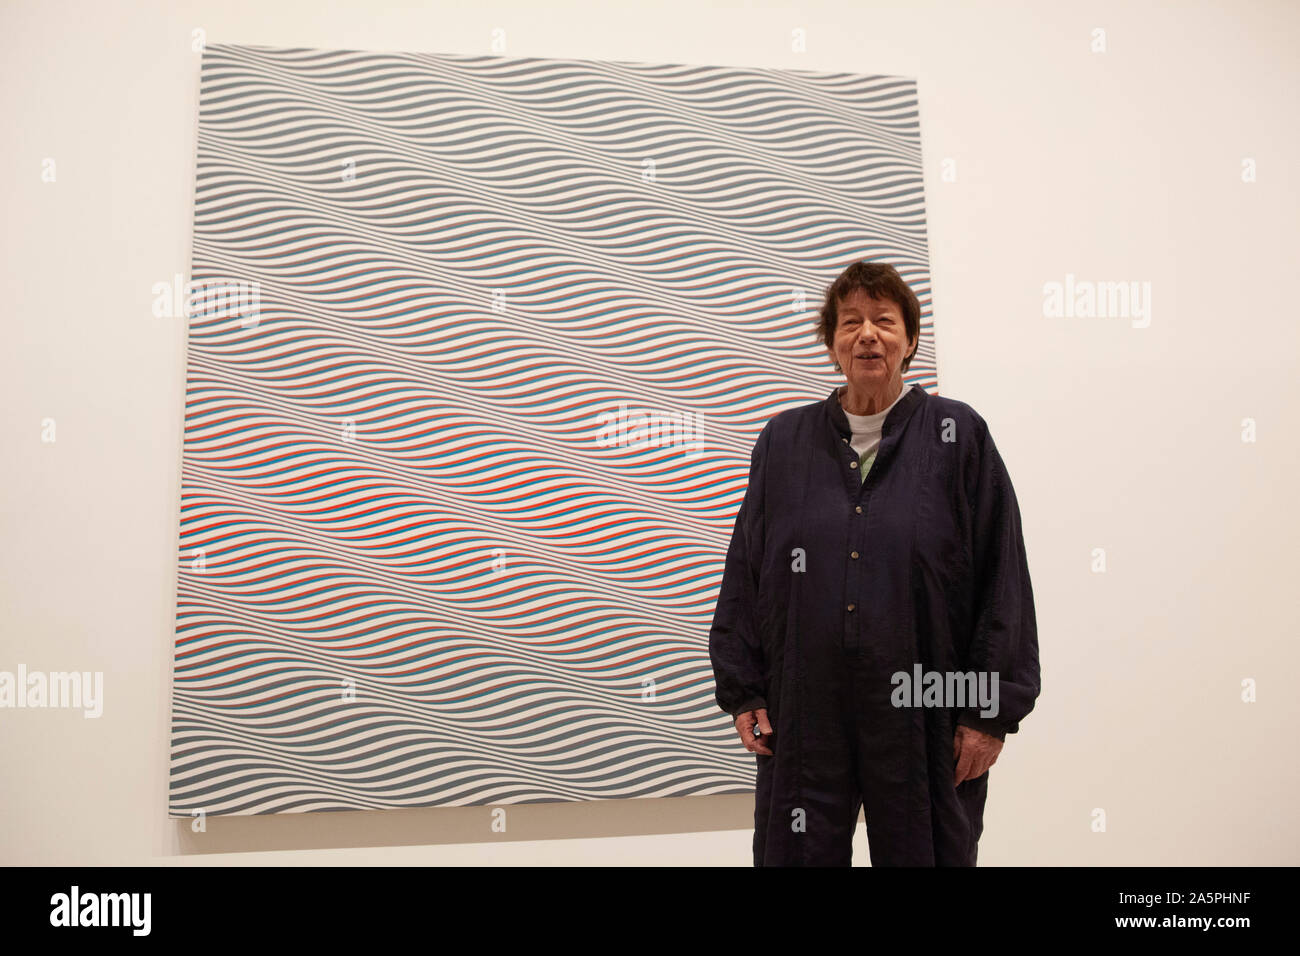 Eine retrospektive der Arbeiten von Britischen op- spezialist Bridget Riley öffnet sich an der Hayward Gallery an der Southbank. Der Künstler, jetzt 88 Jahre alt, wird hier mit ihrer Arbeit "Katarakt 3' von 1967 gesehen. Stockfoto